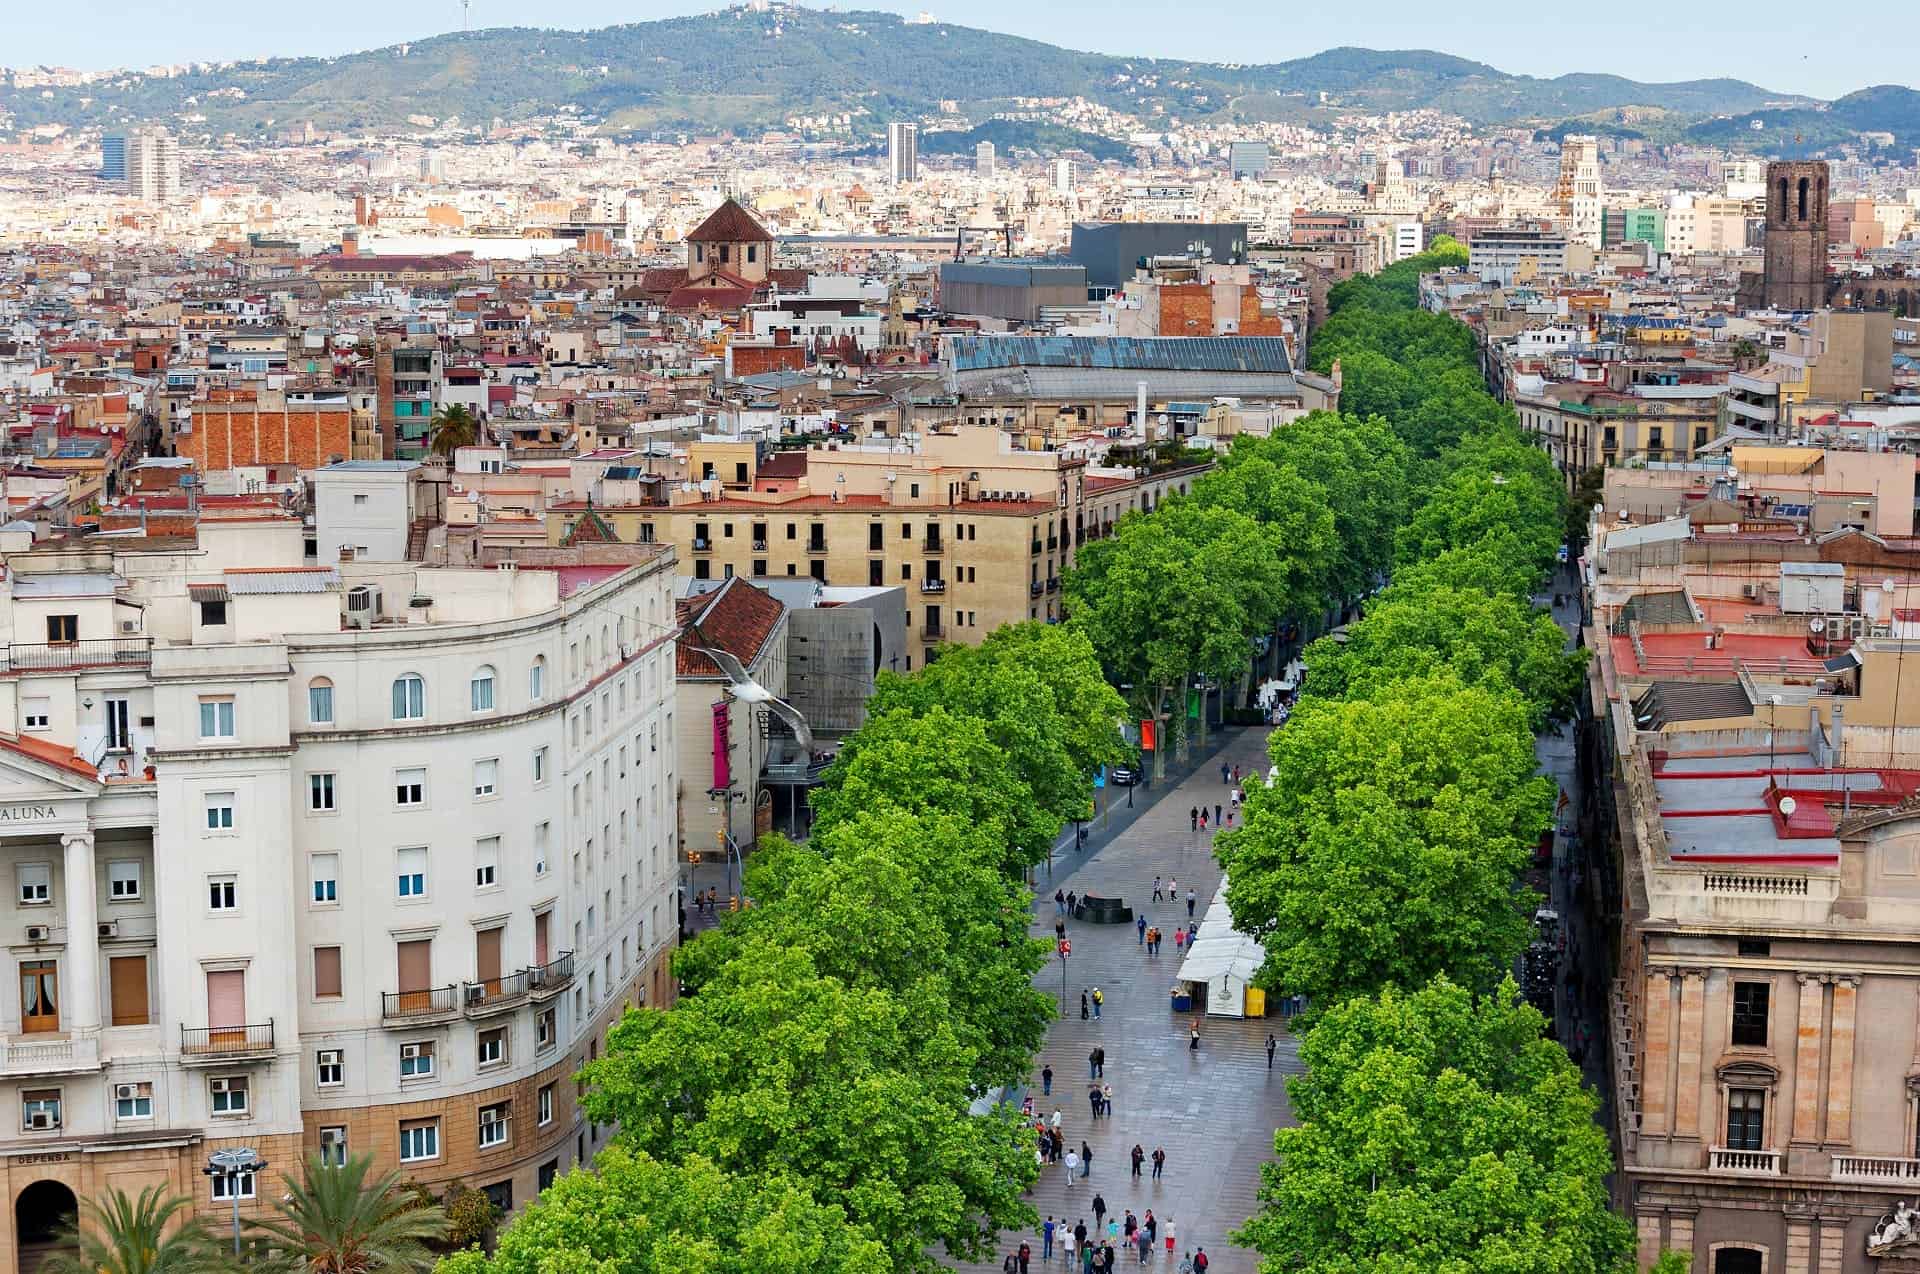 La Rambla di Barcellona accoglierà i visitatori con un mese di visite gratuite